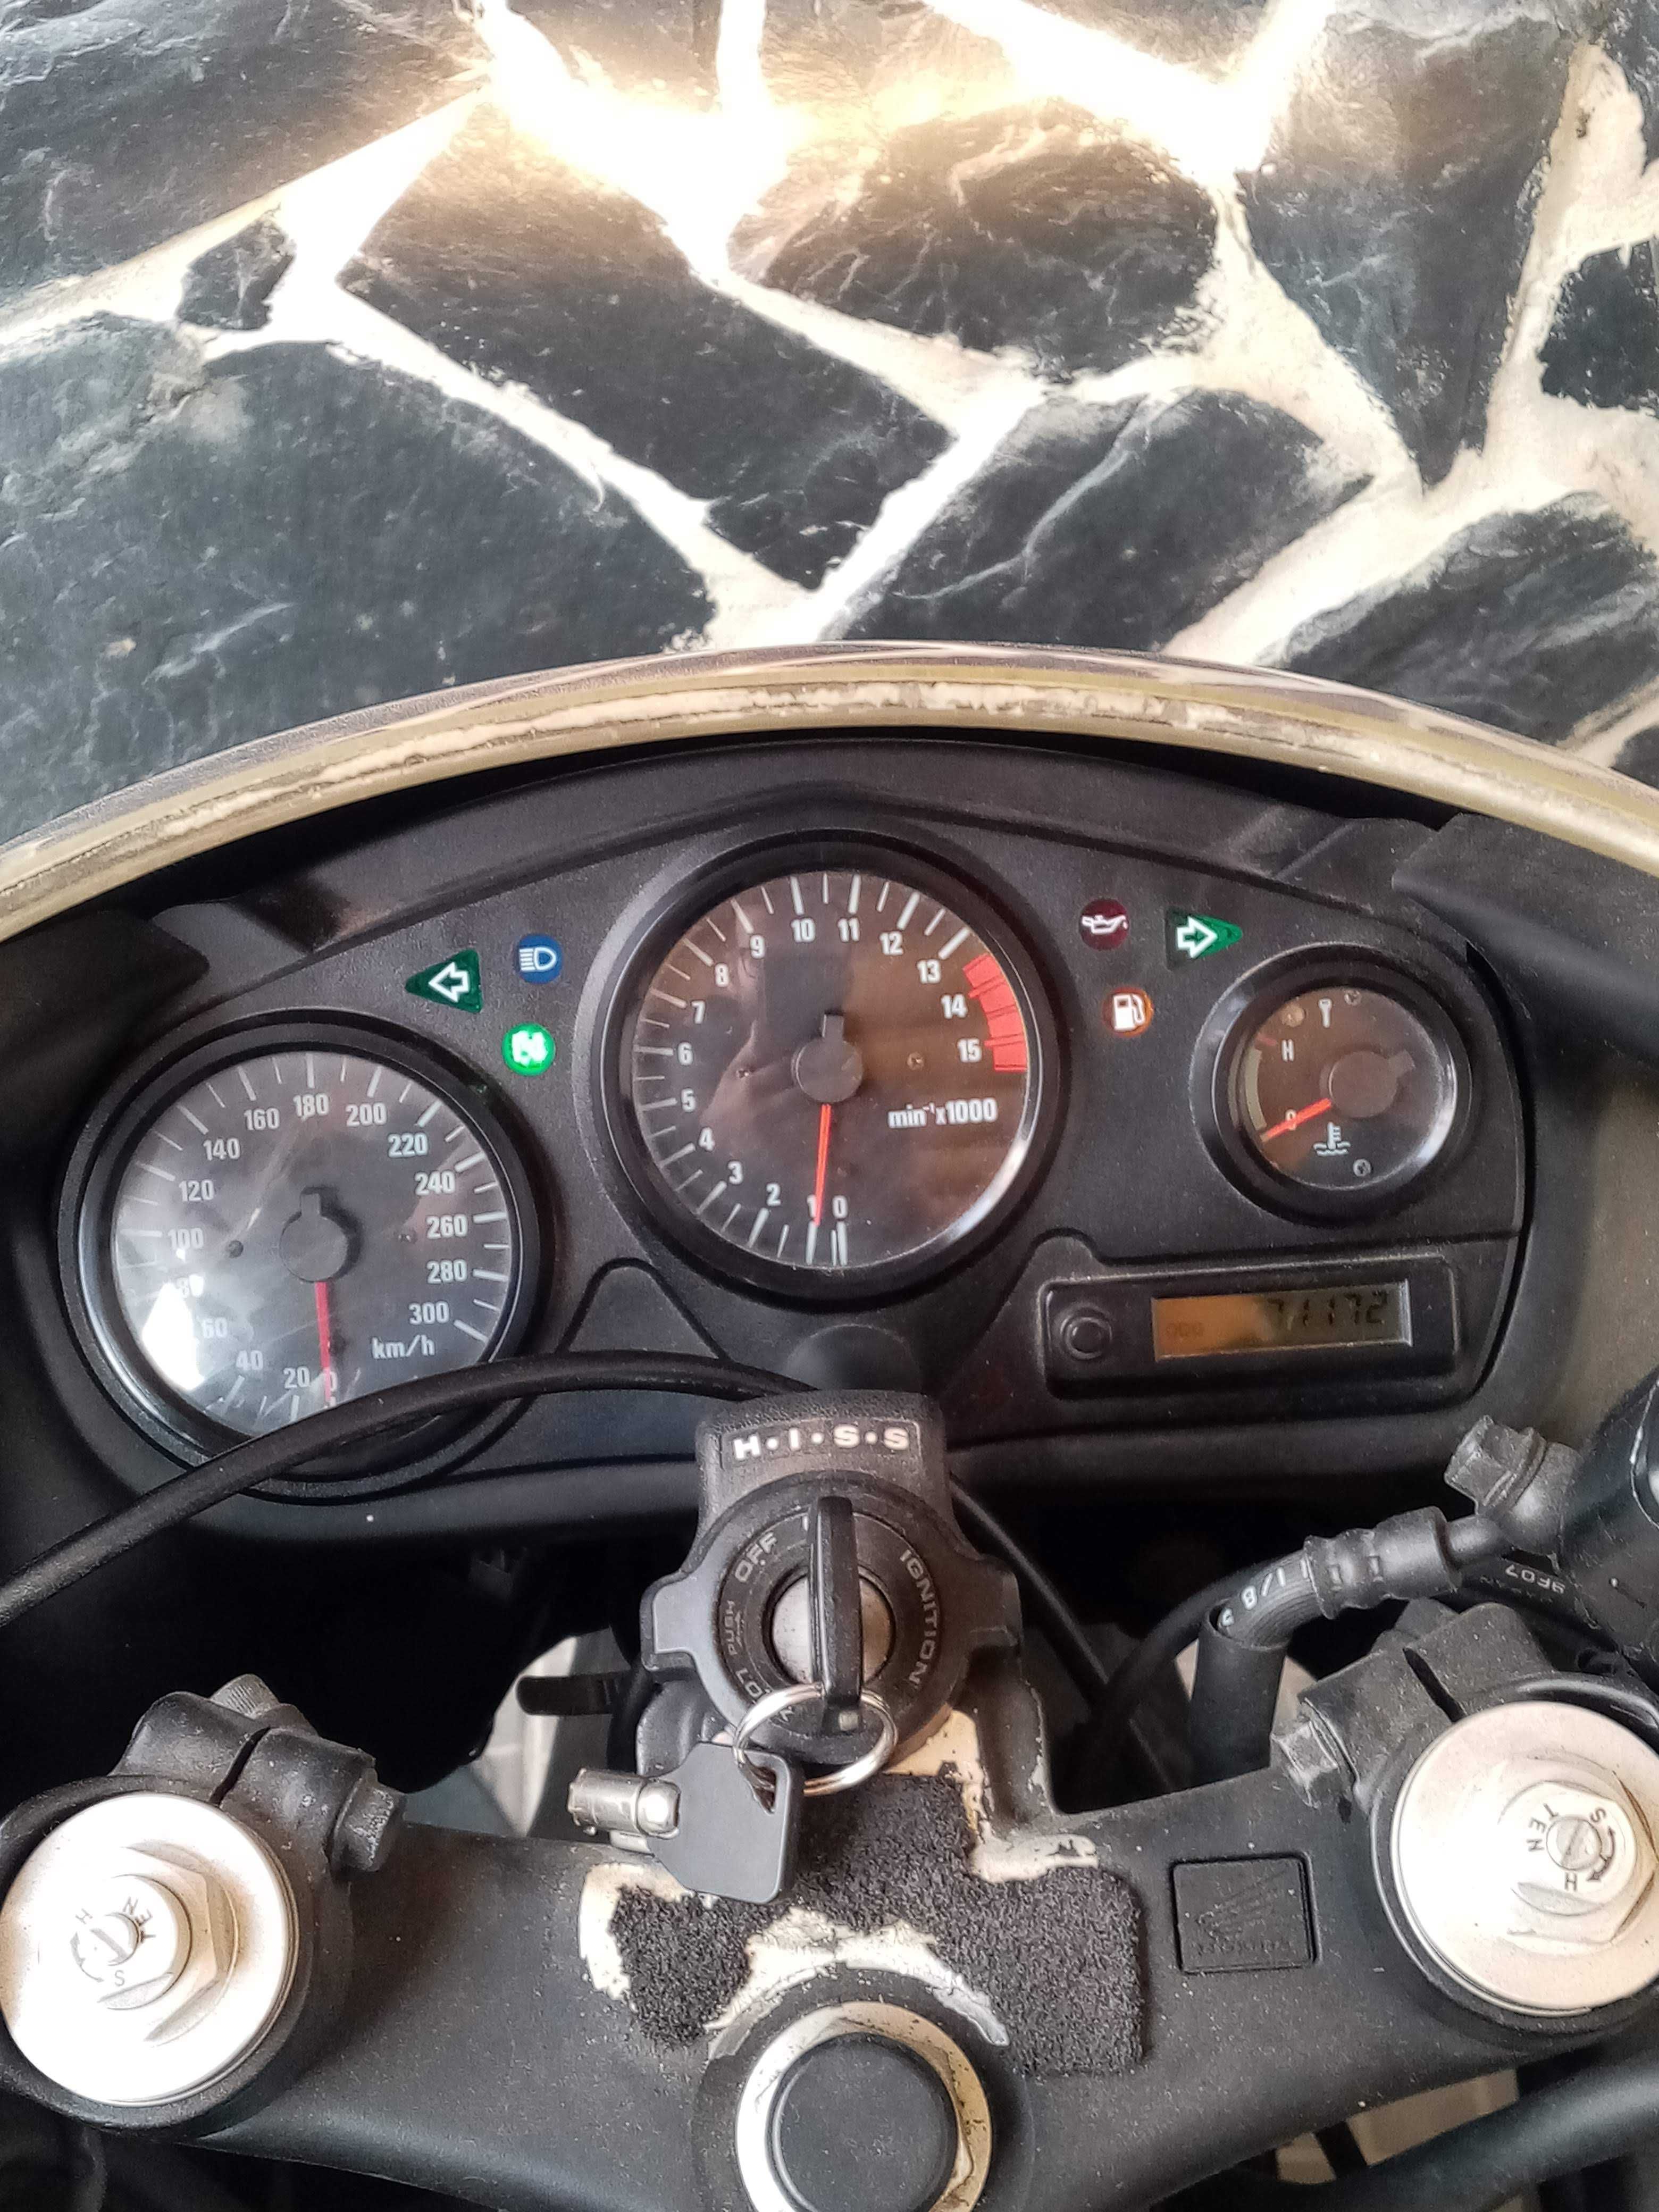 Moto Honda CBR 600F